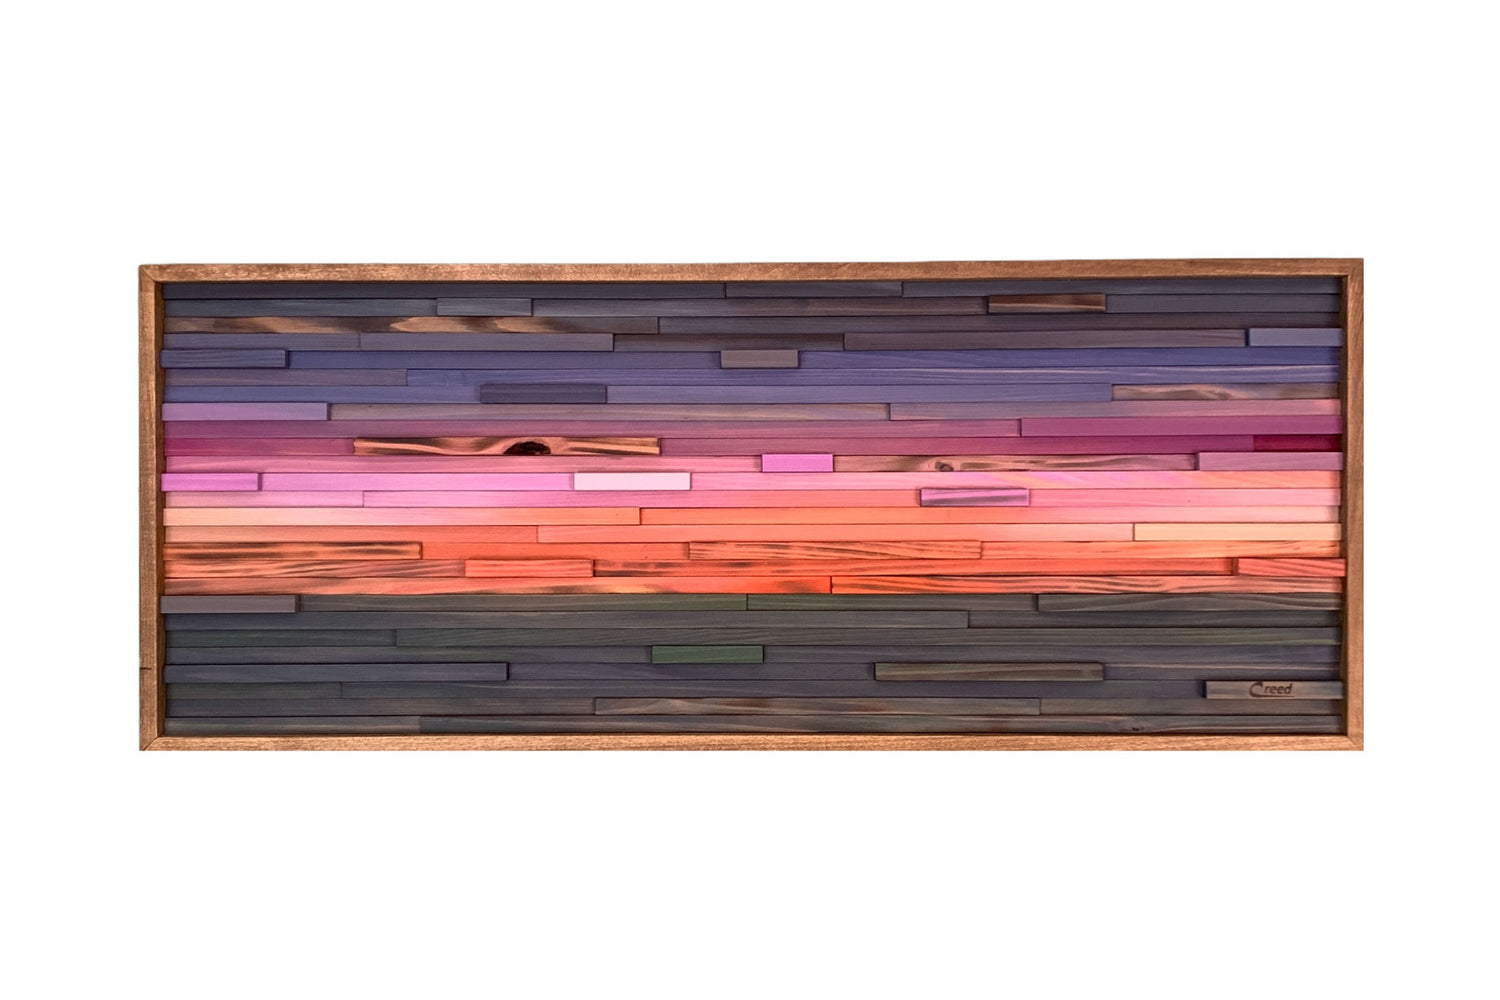 Violet Magenta Sunset Over Ocean Impression Modern Wood Wall Art